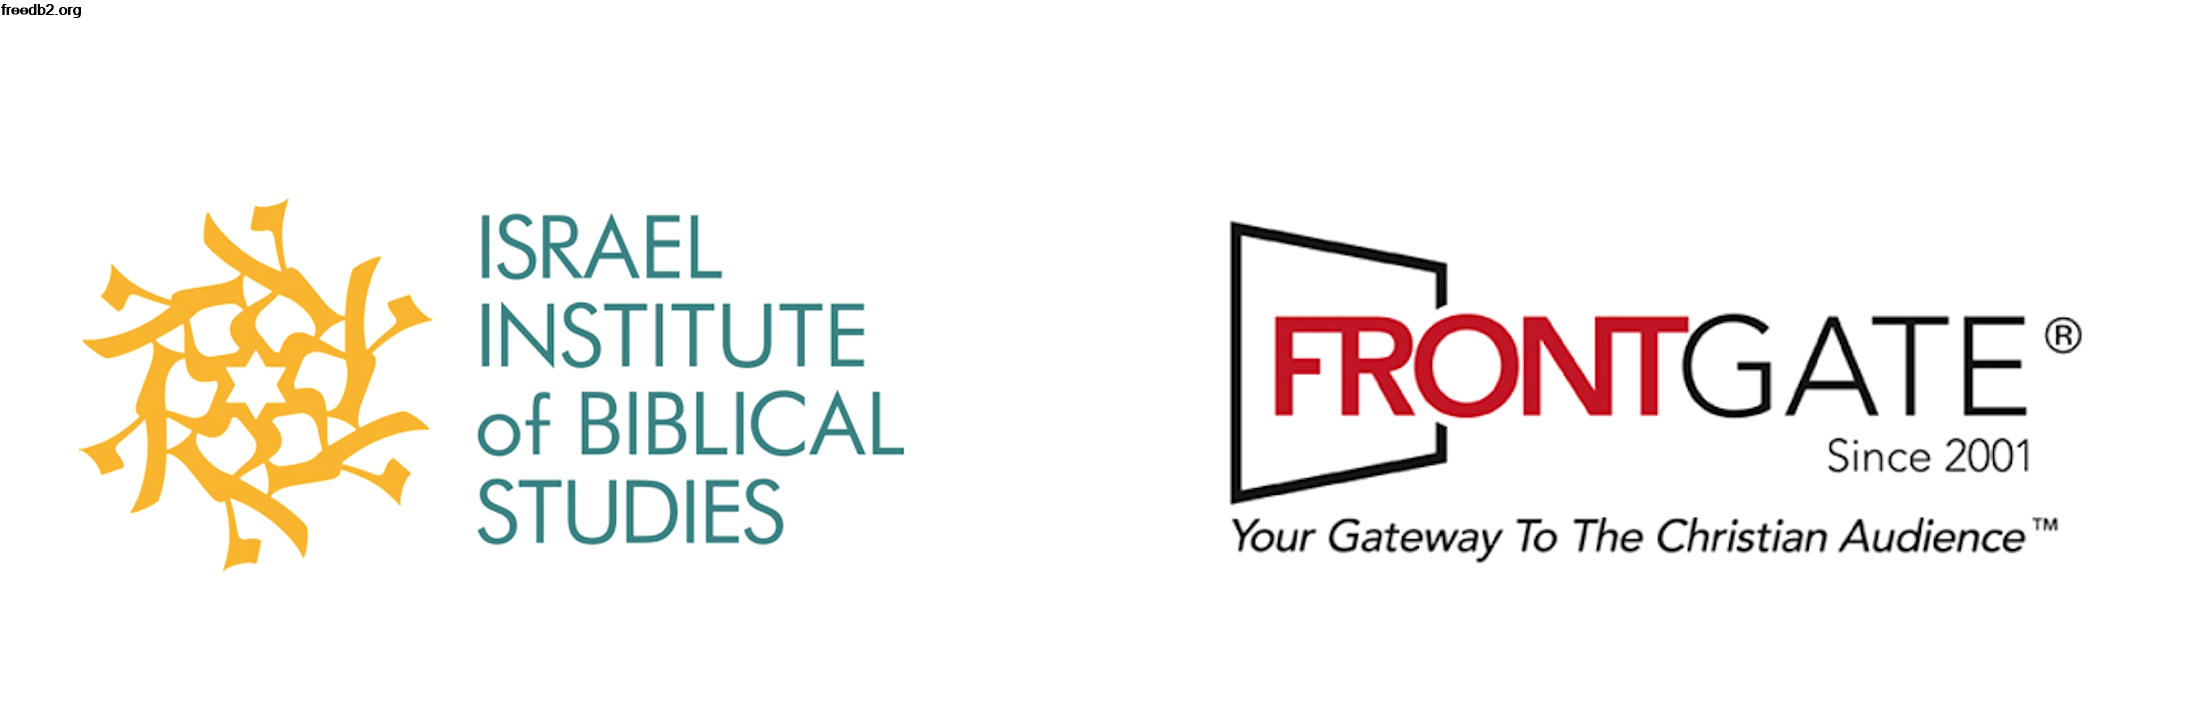 Frontgate Logo - Front Gate Real Estate Logo Design 48Hourslogo Com Frontgate Logo ...